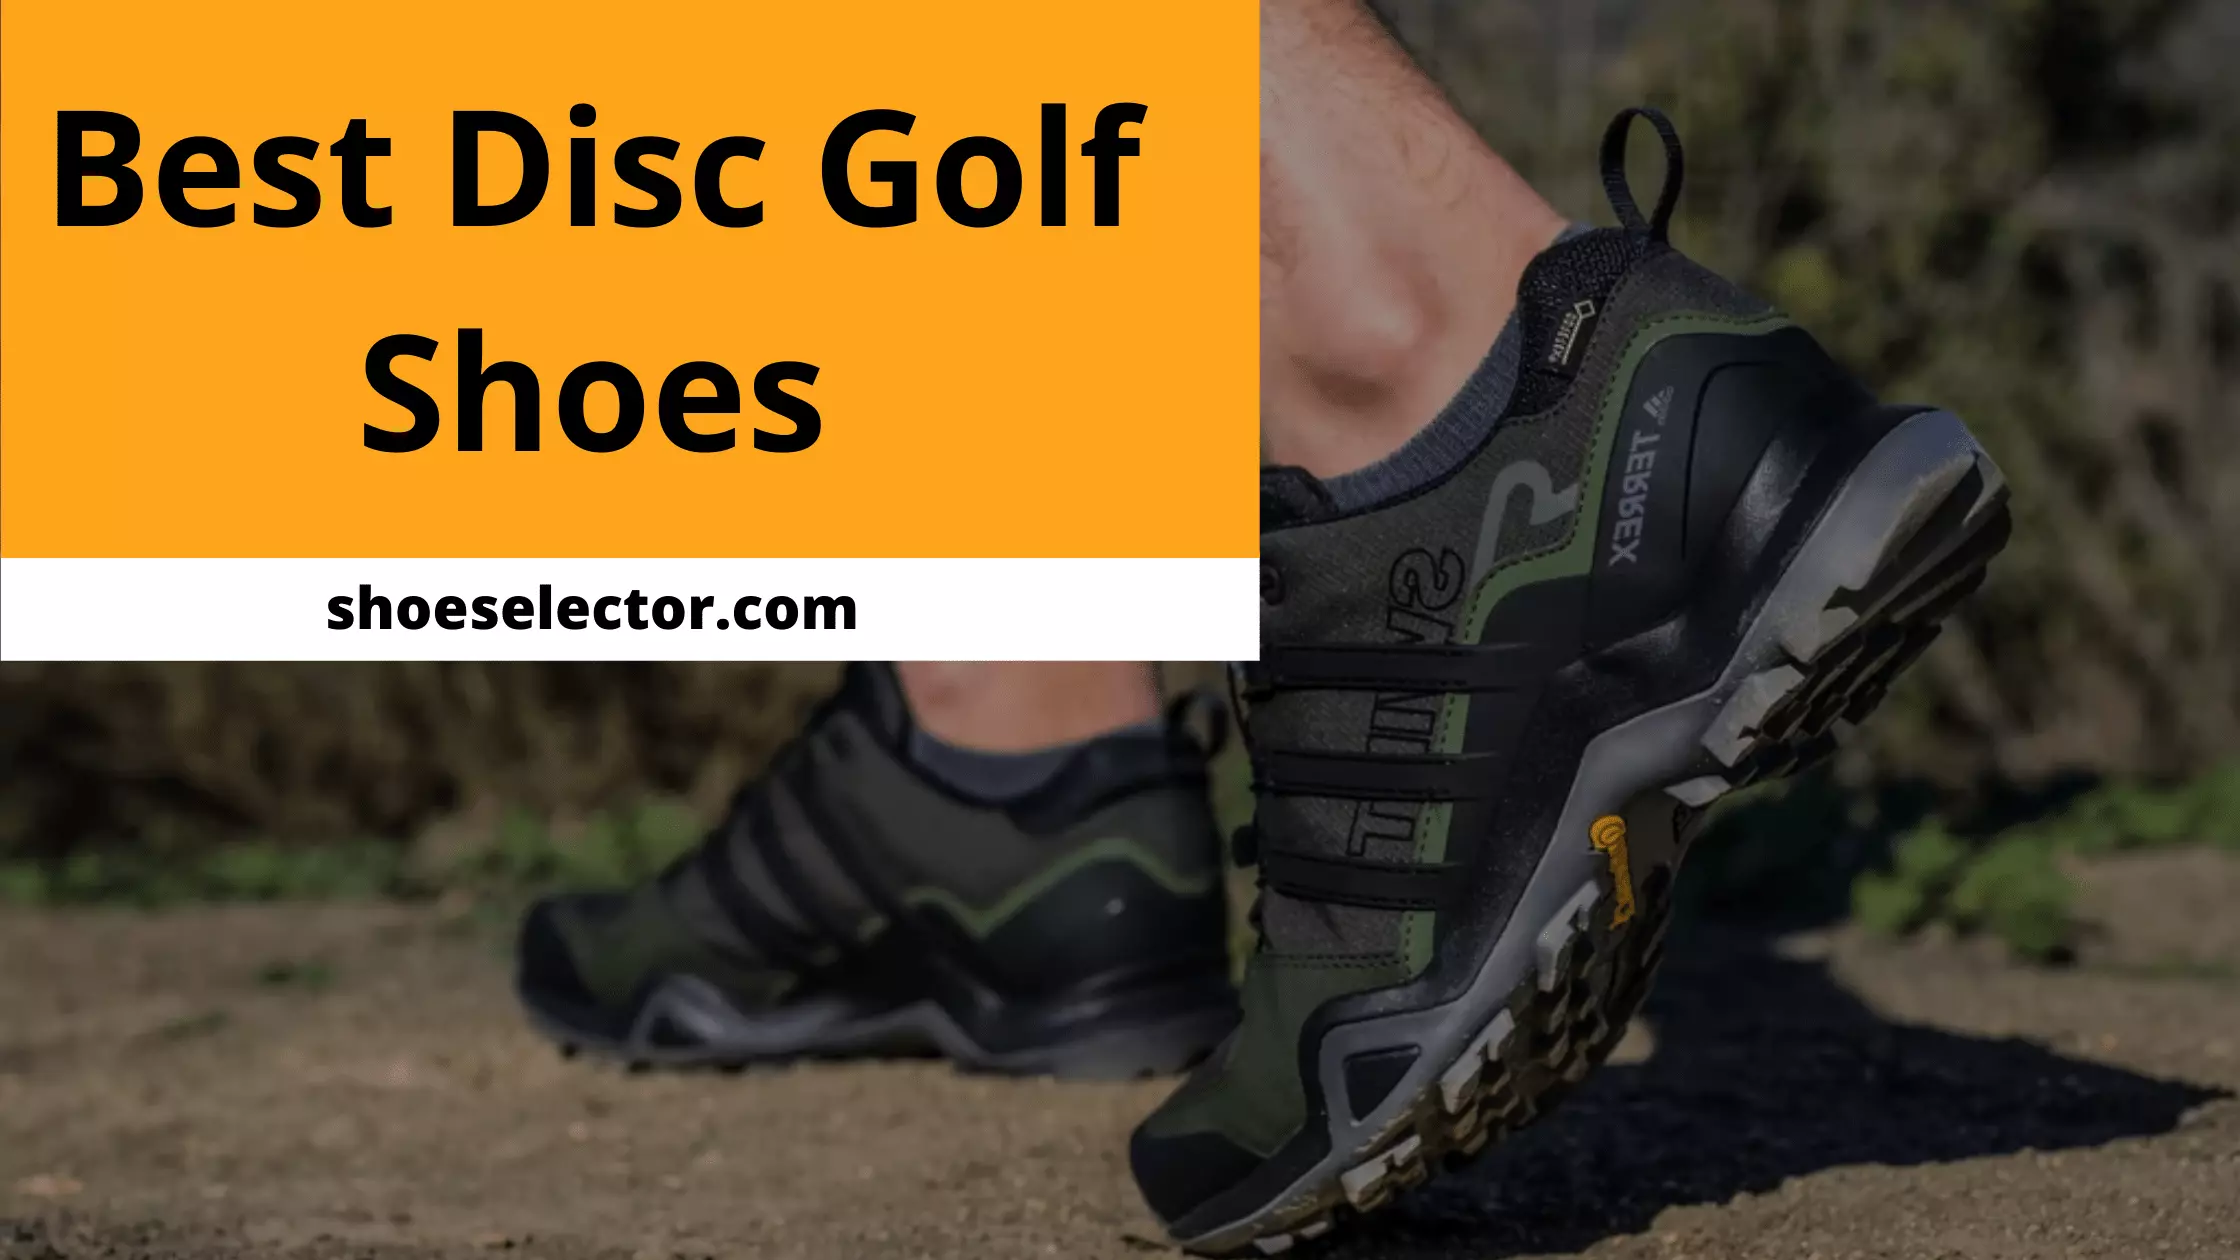 Best Disc Golf Shoes - Top Expert's Choice